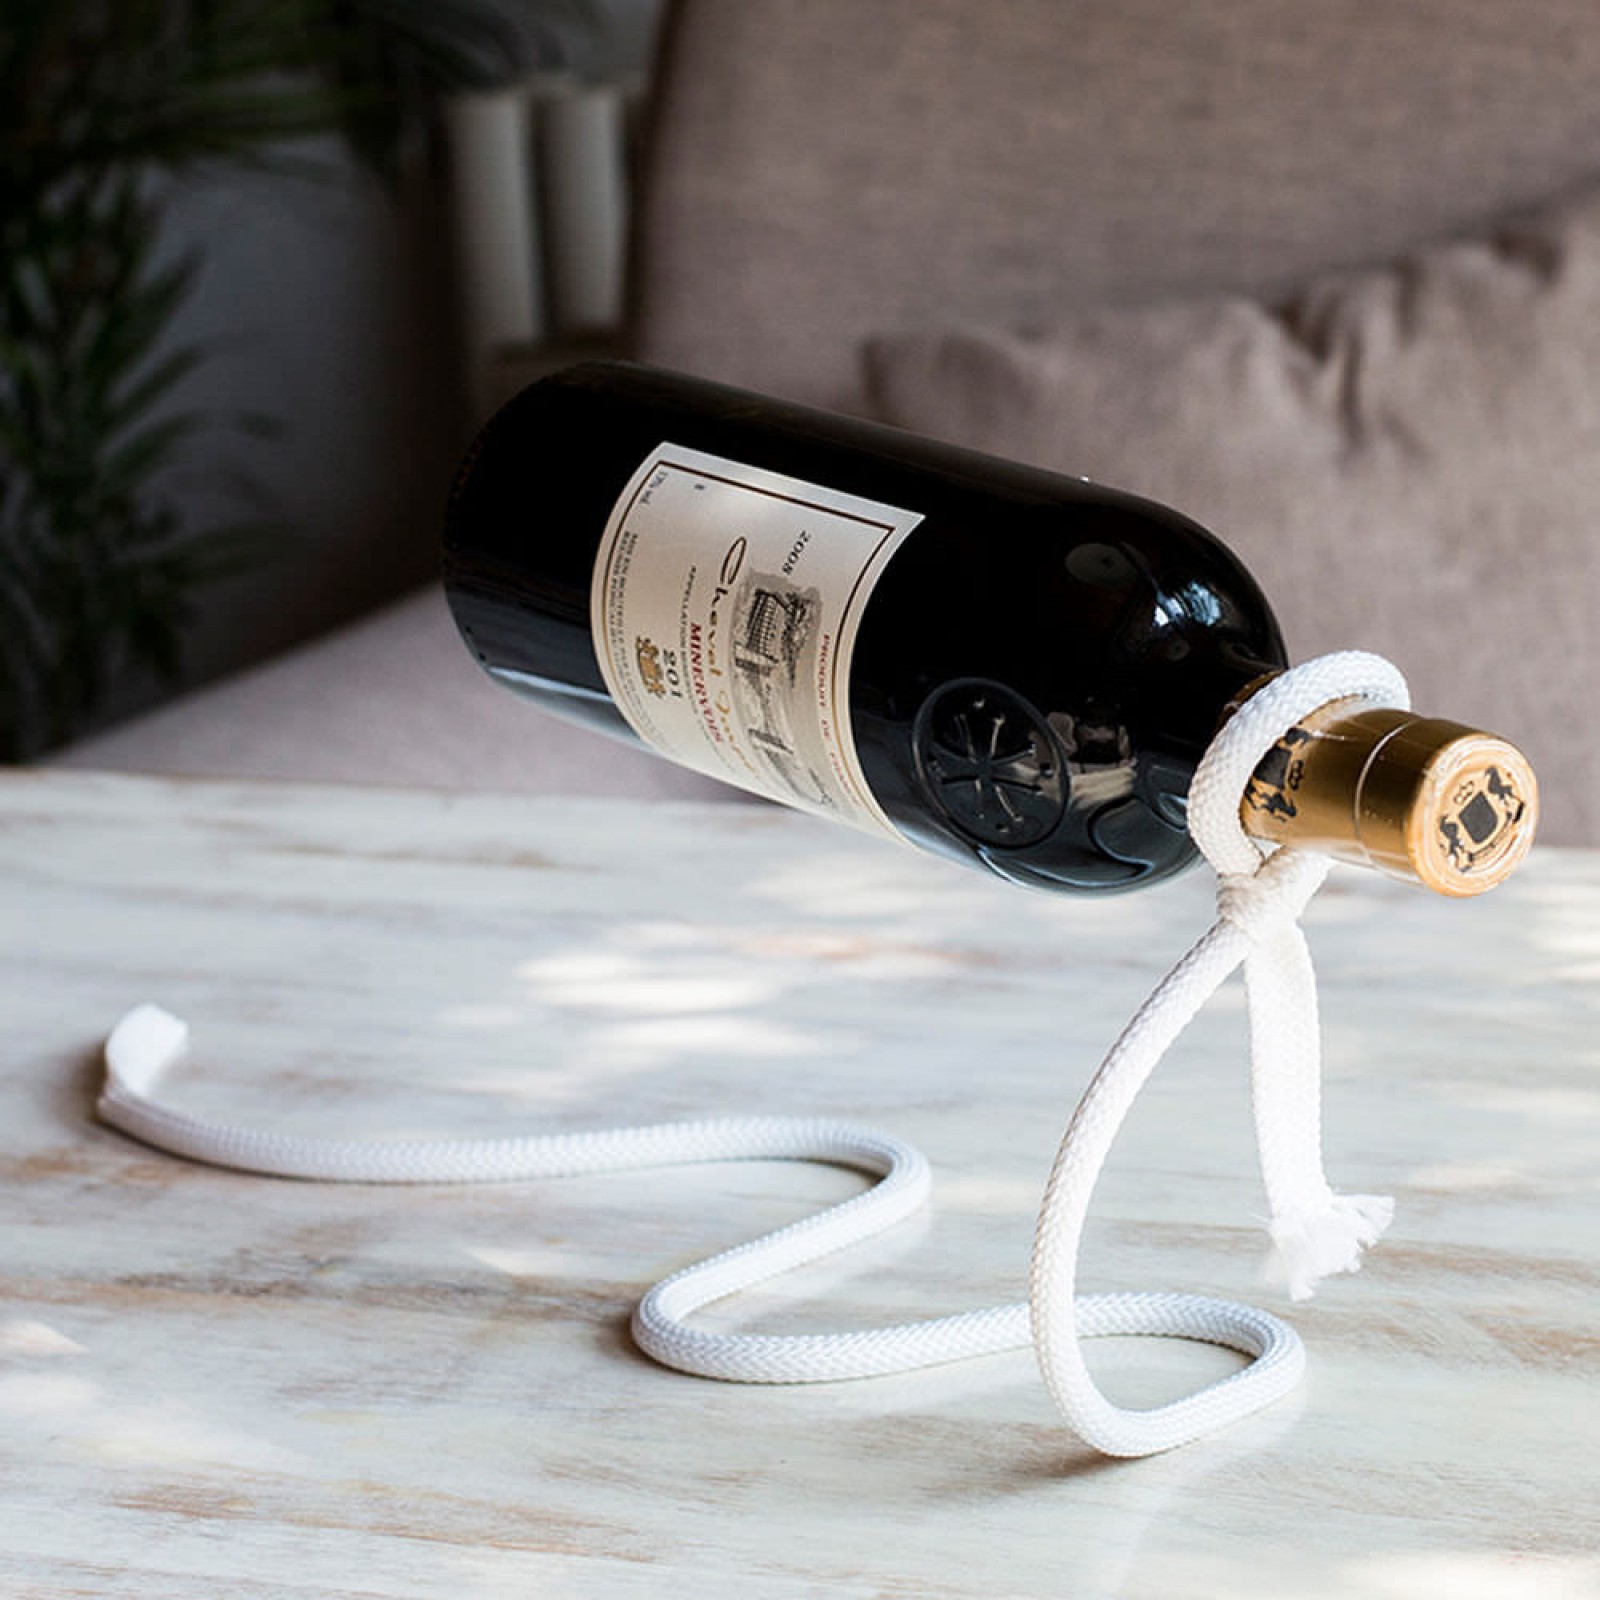 LASSO Wine Bottle Holder Rope Rack Bar Stand Kitchen Home Gift Peleg Design 